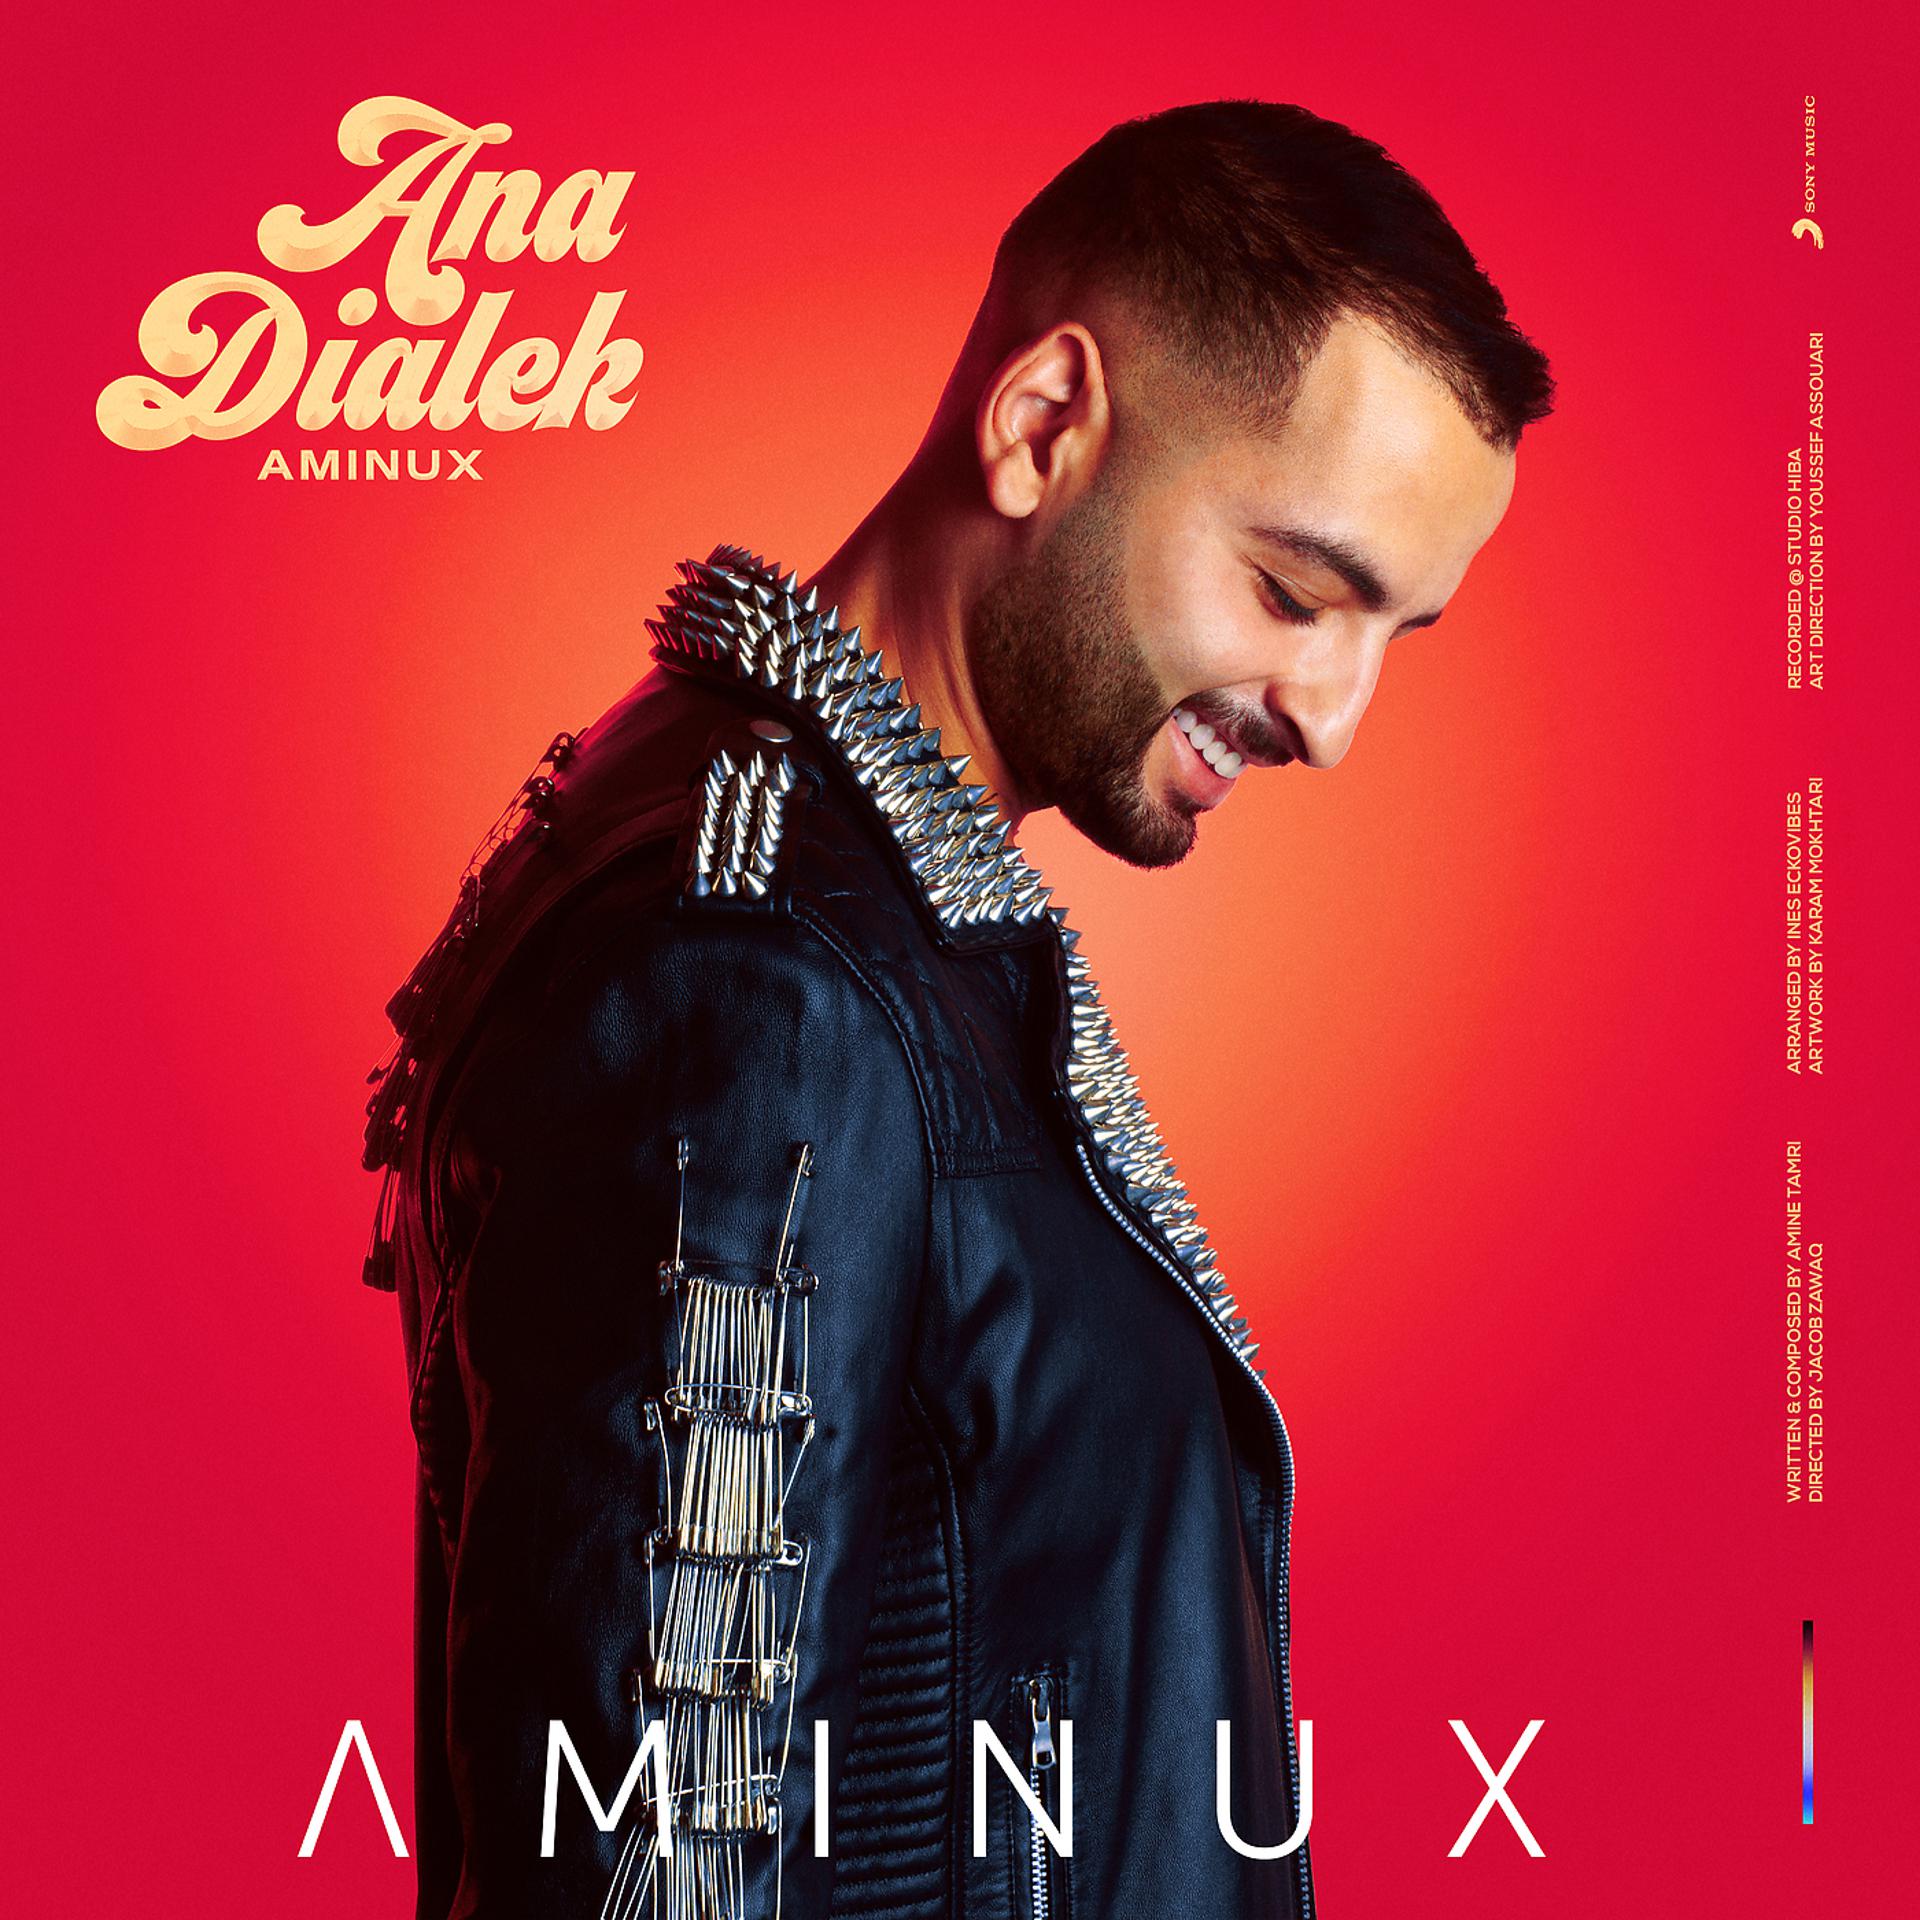 Постер к треку AMINUX - Ana Dialek